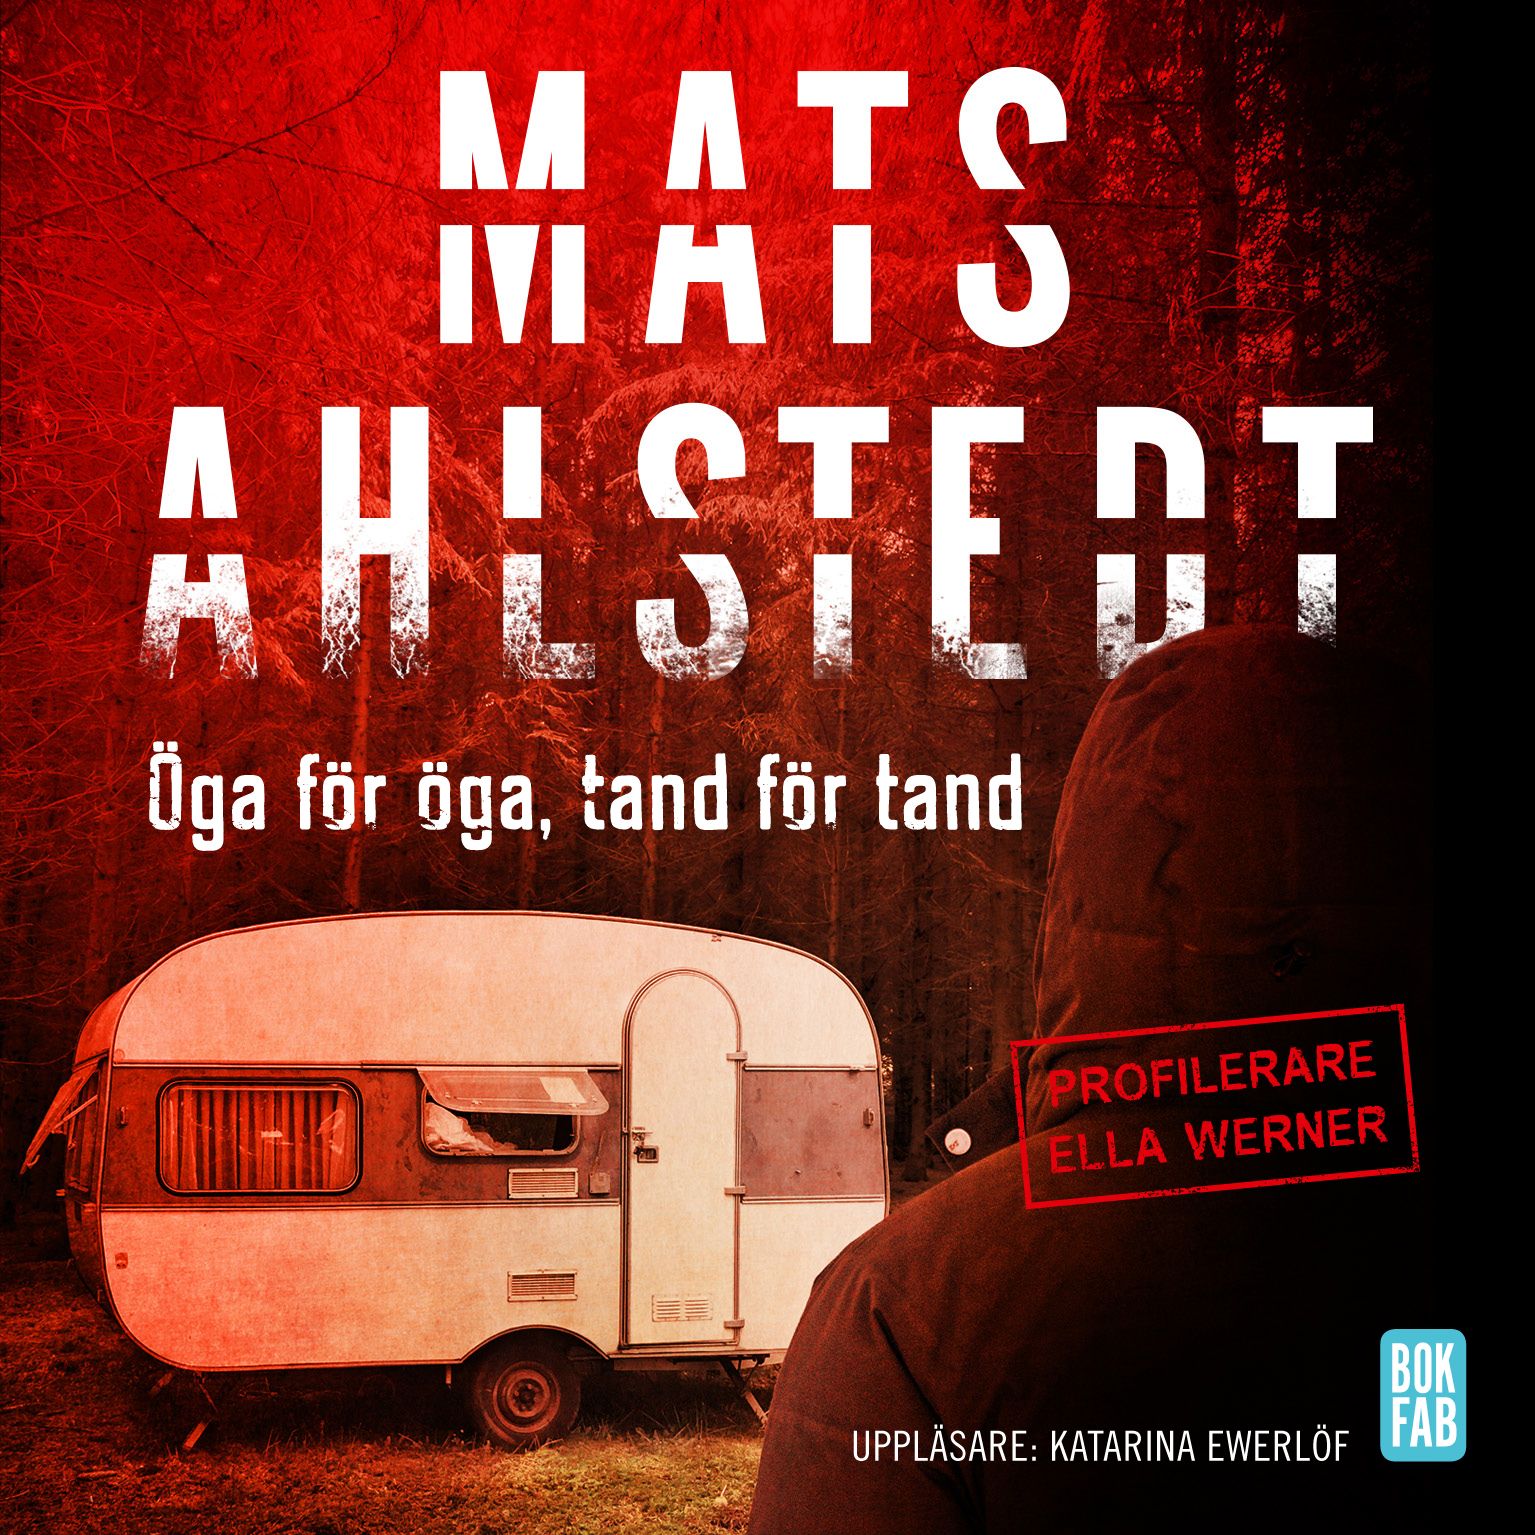 Öga för öga, tand för tand, audiobook by Mats Ahlstedt